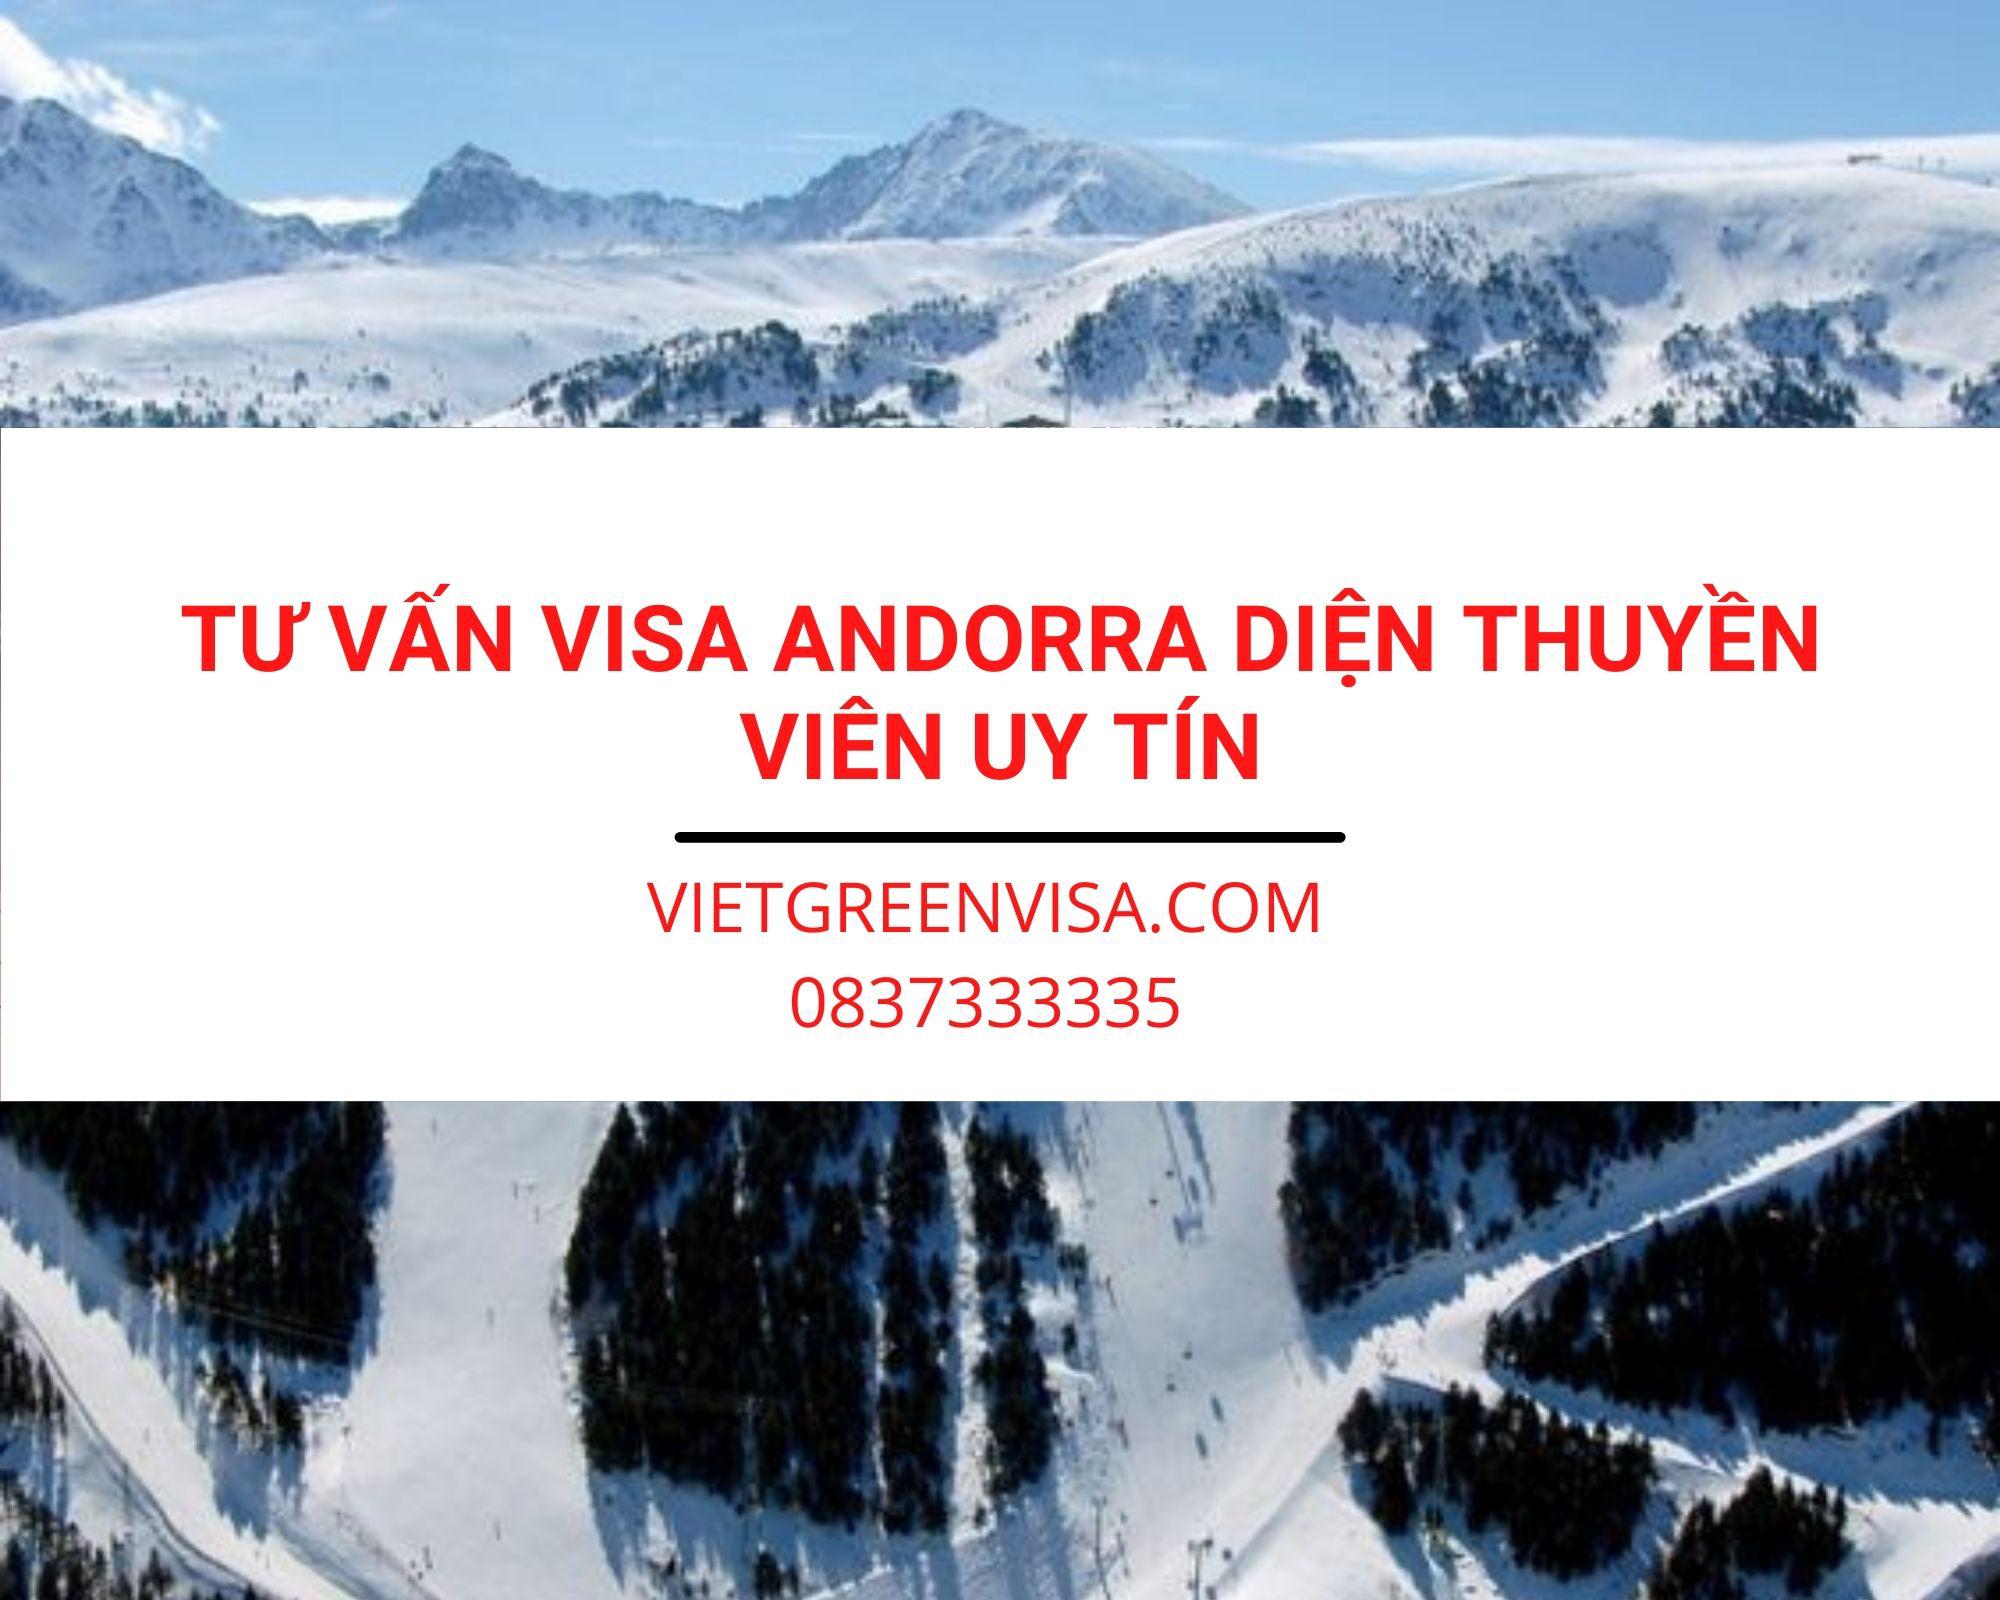 Dịch vụ tư vấn visa Andorra diện Thuyền viên tại Hà Nội